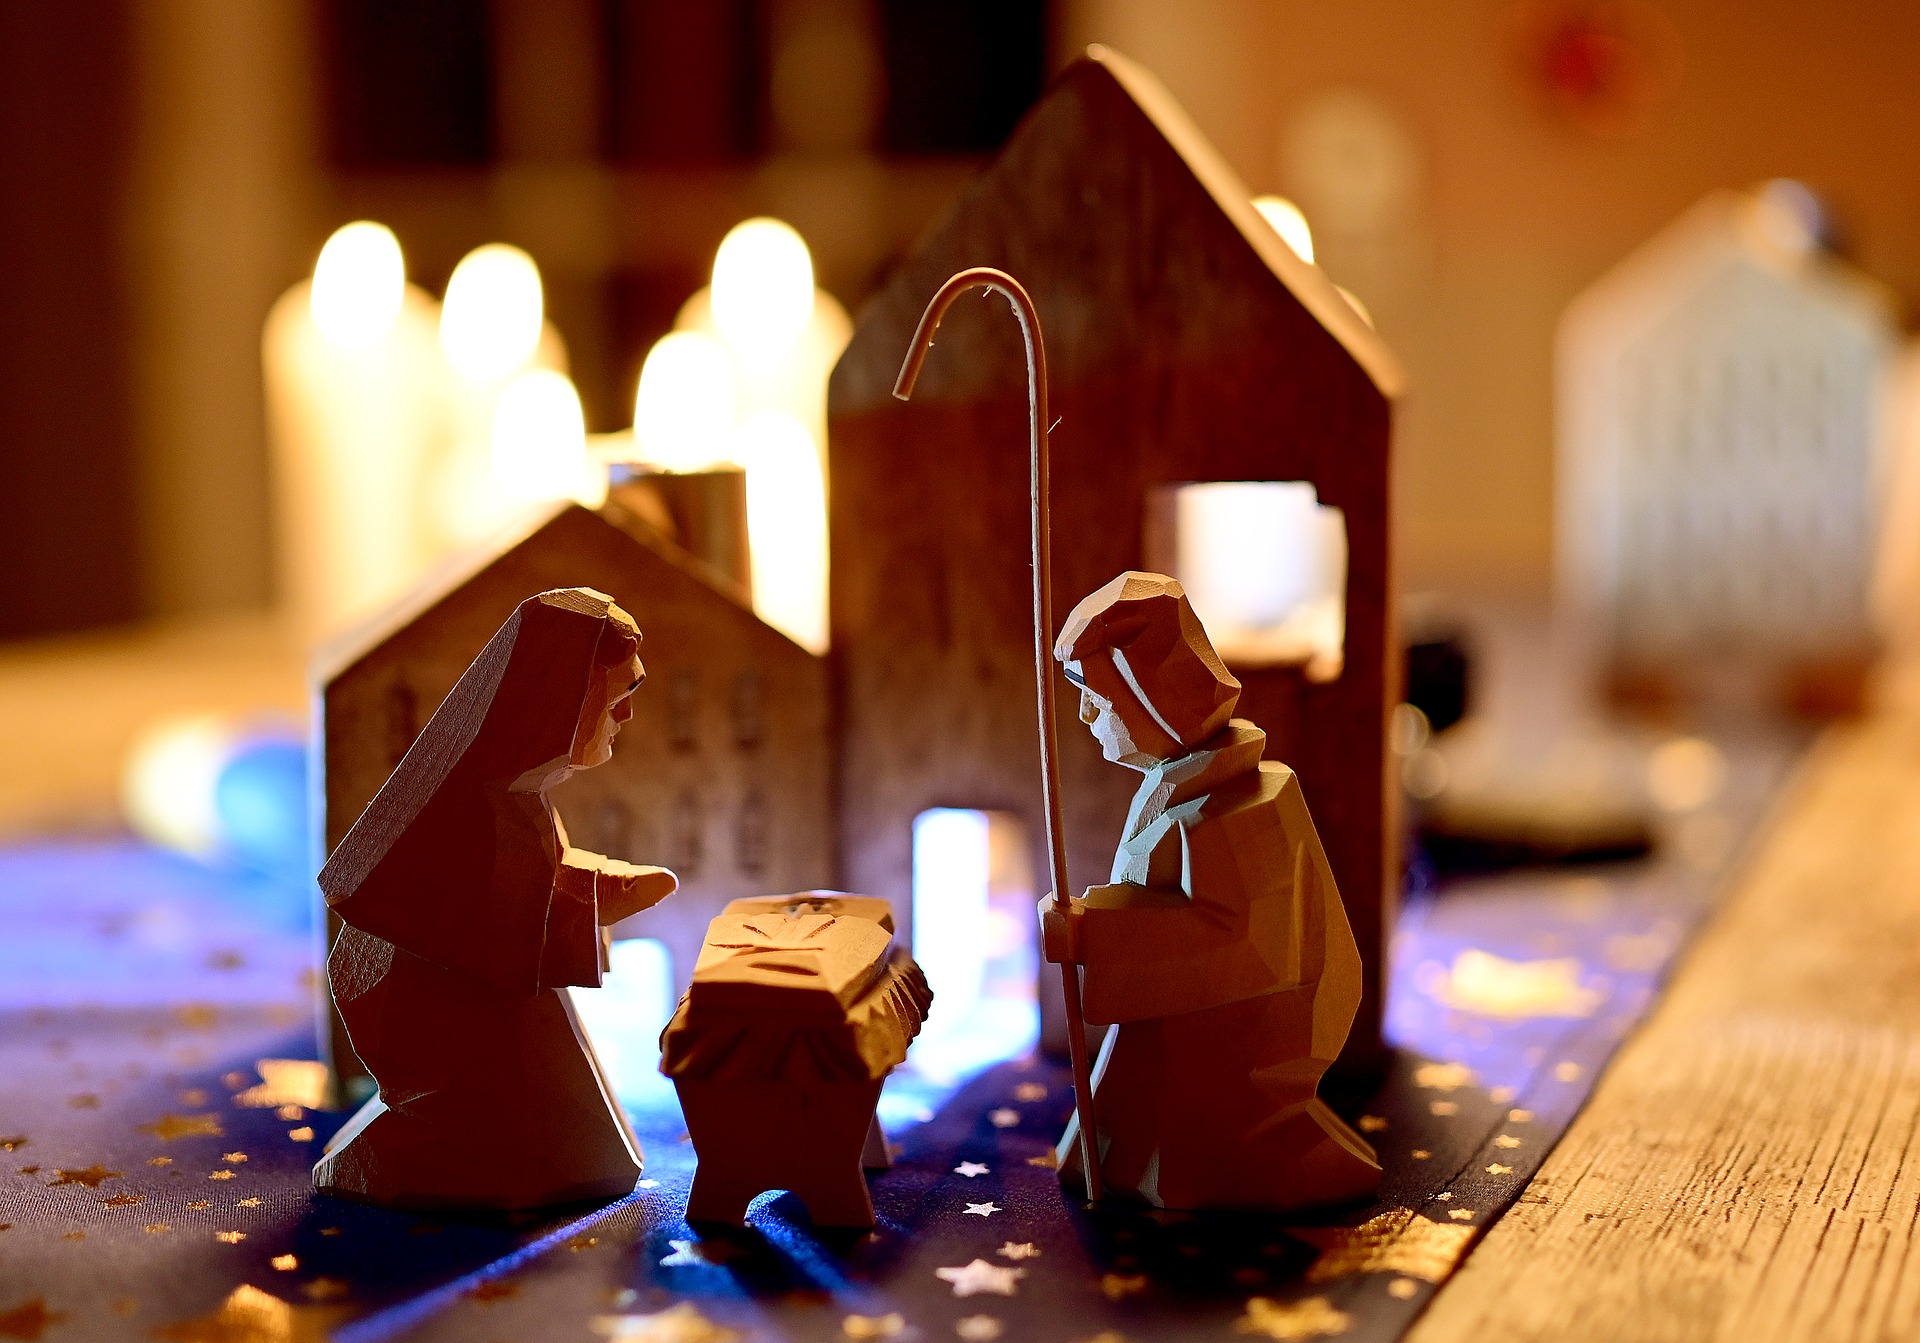 Christmas Holy Family Nativity